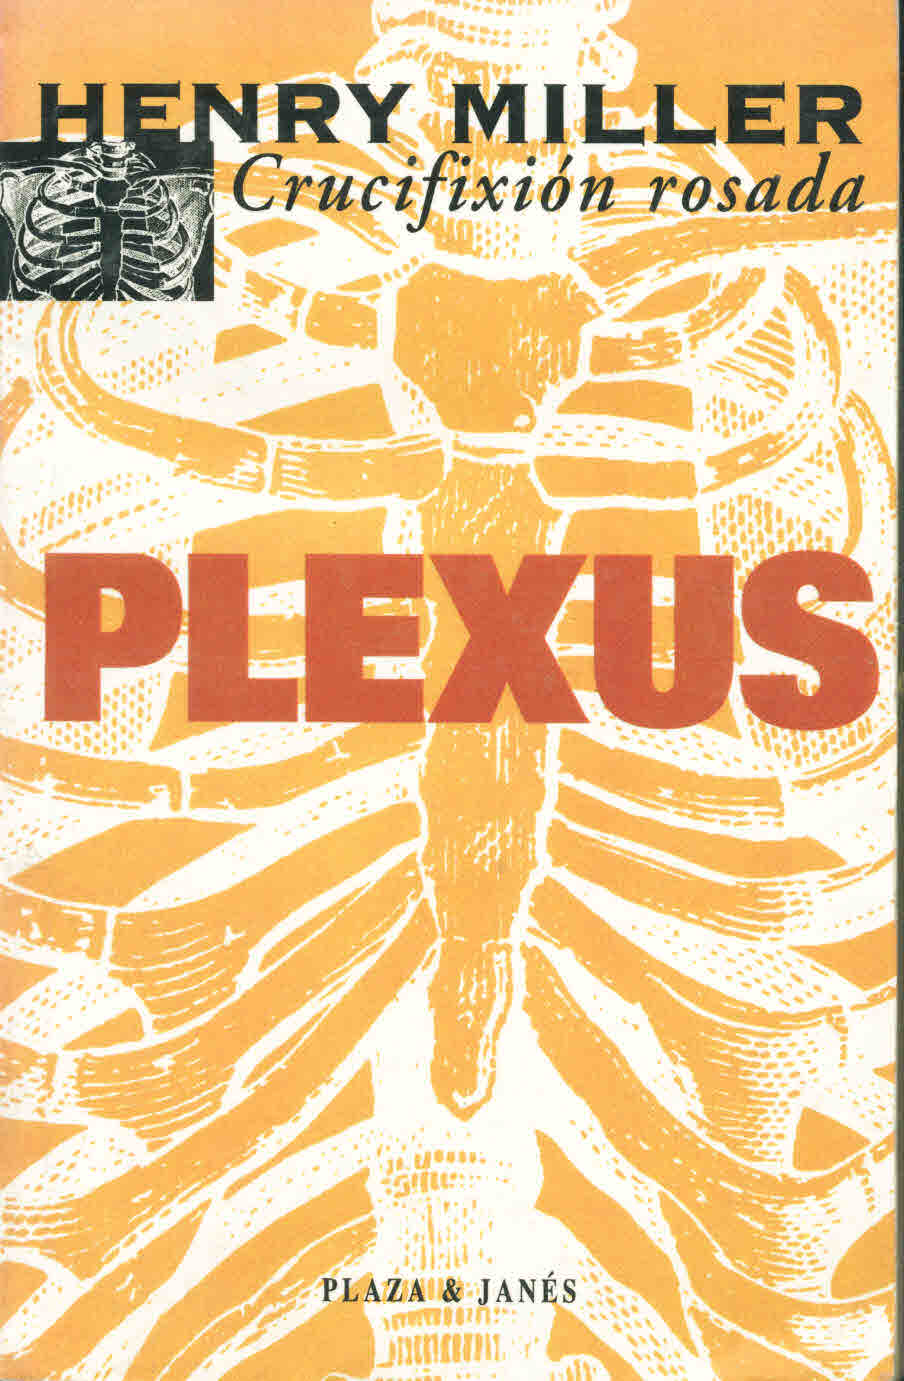 Plexus. La crucifixión rosada II